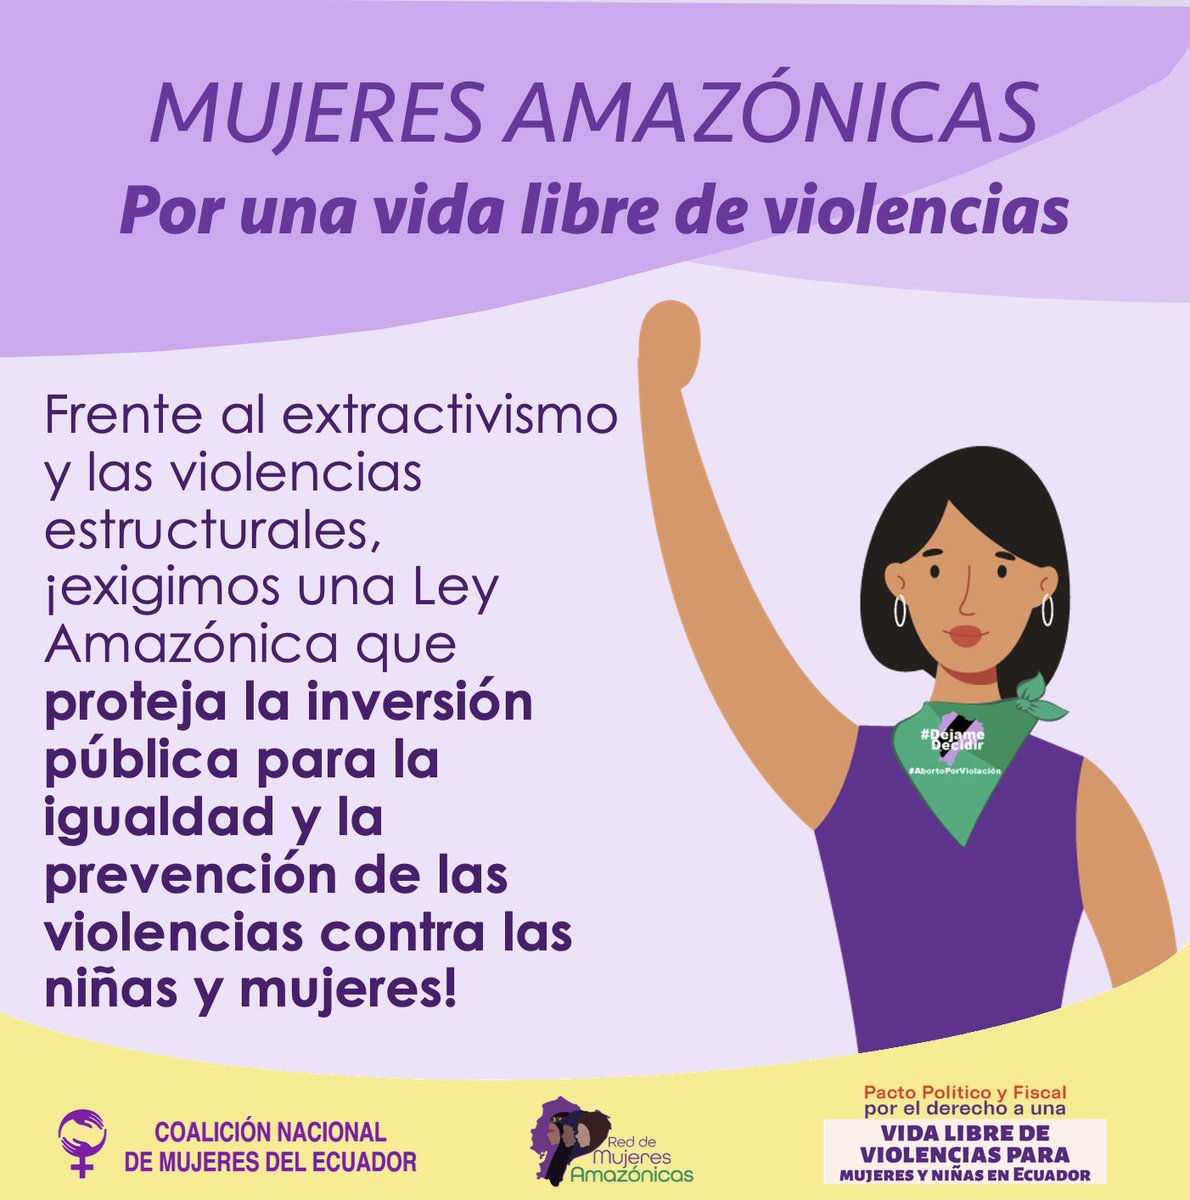 #CEDAW recomendó a #Ecuador @LassoGuillermo @AsambleaEcuador promover una cultura de reparto equitativo de las responsabilidades domésticas y familiares entre mujeres y hombres, y aumentar el número de centros infantiles públicos #AmazonicasSinViolencias #LeyAmazonica